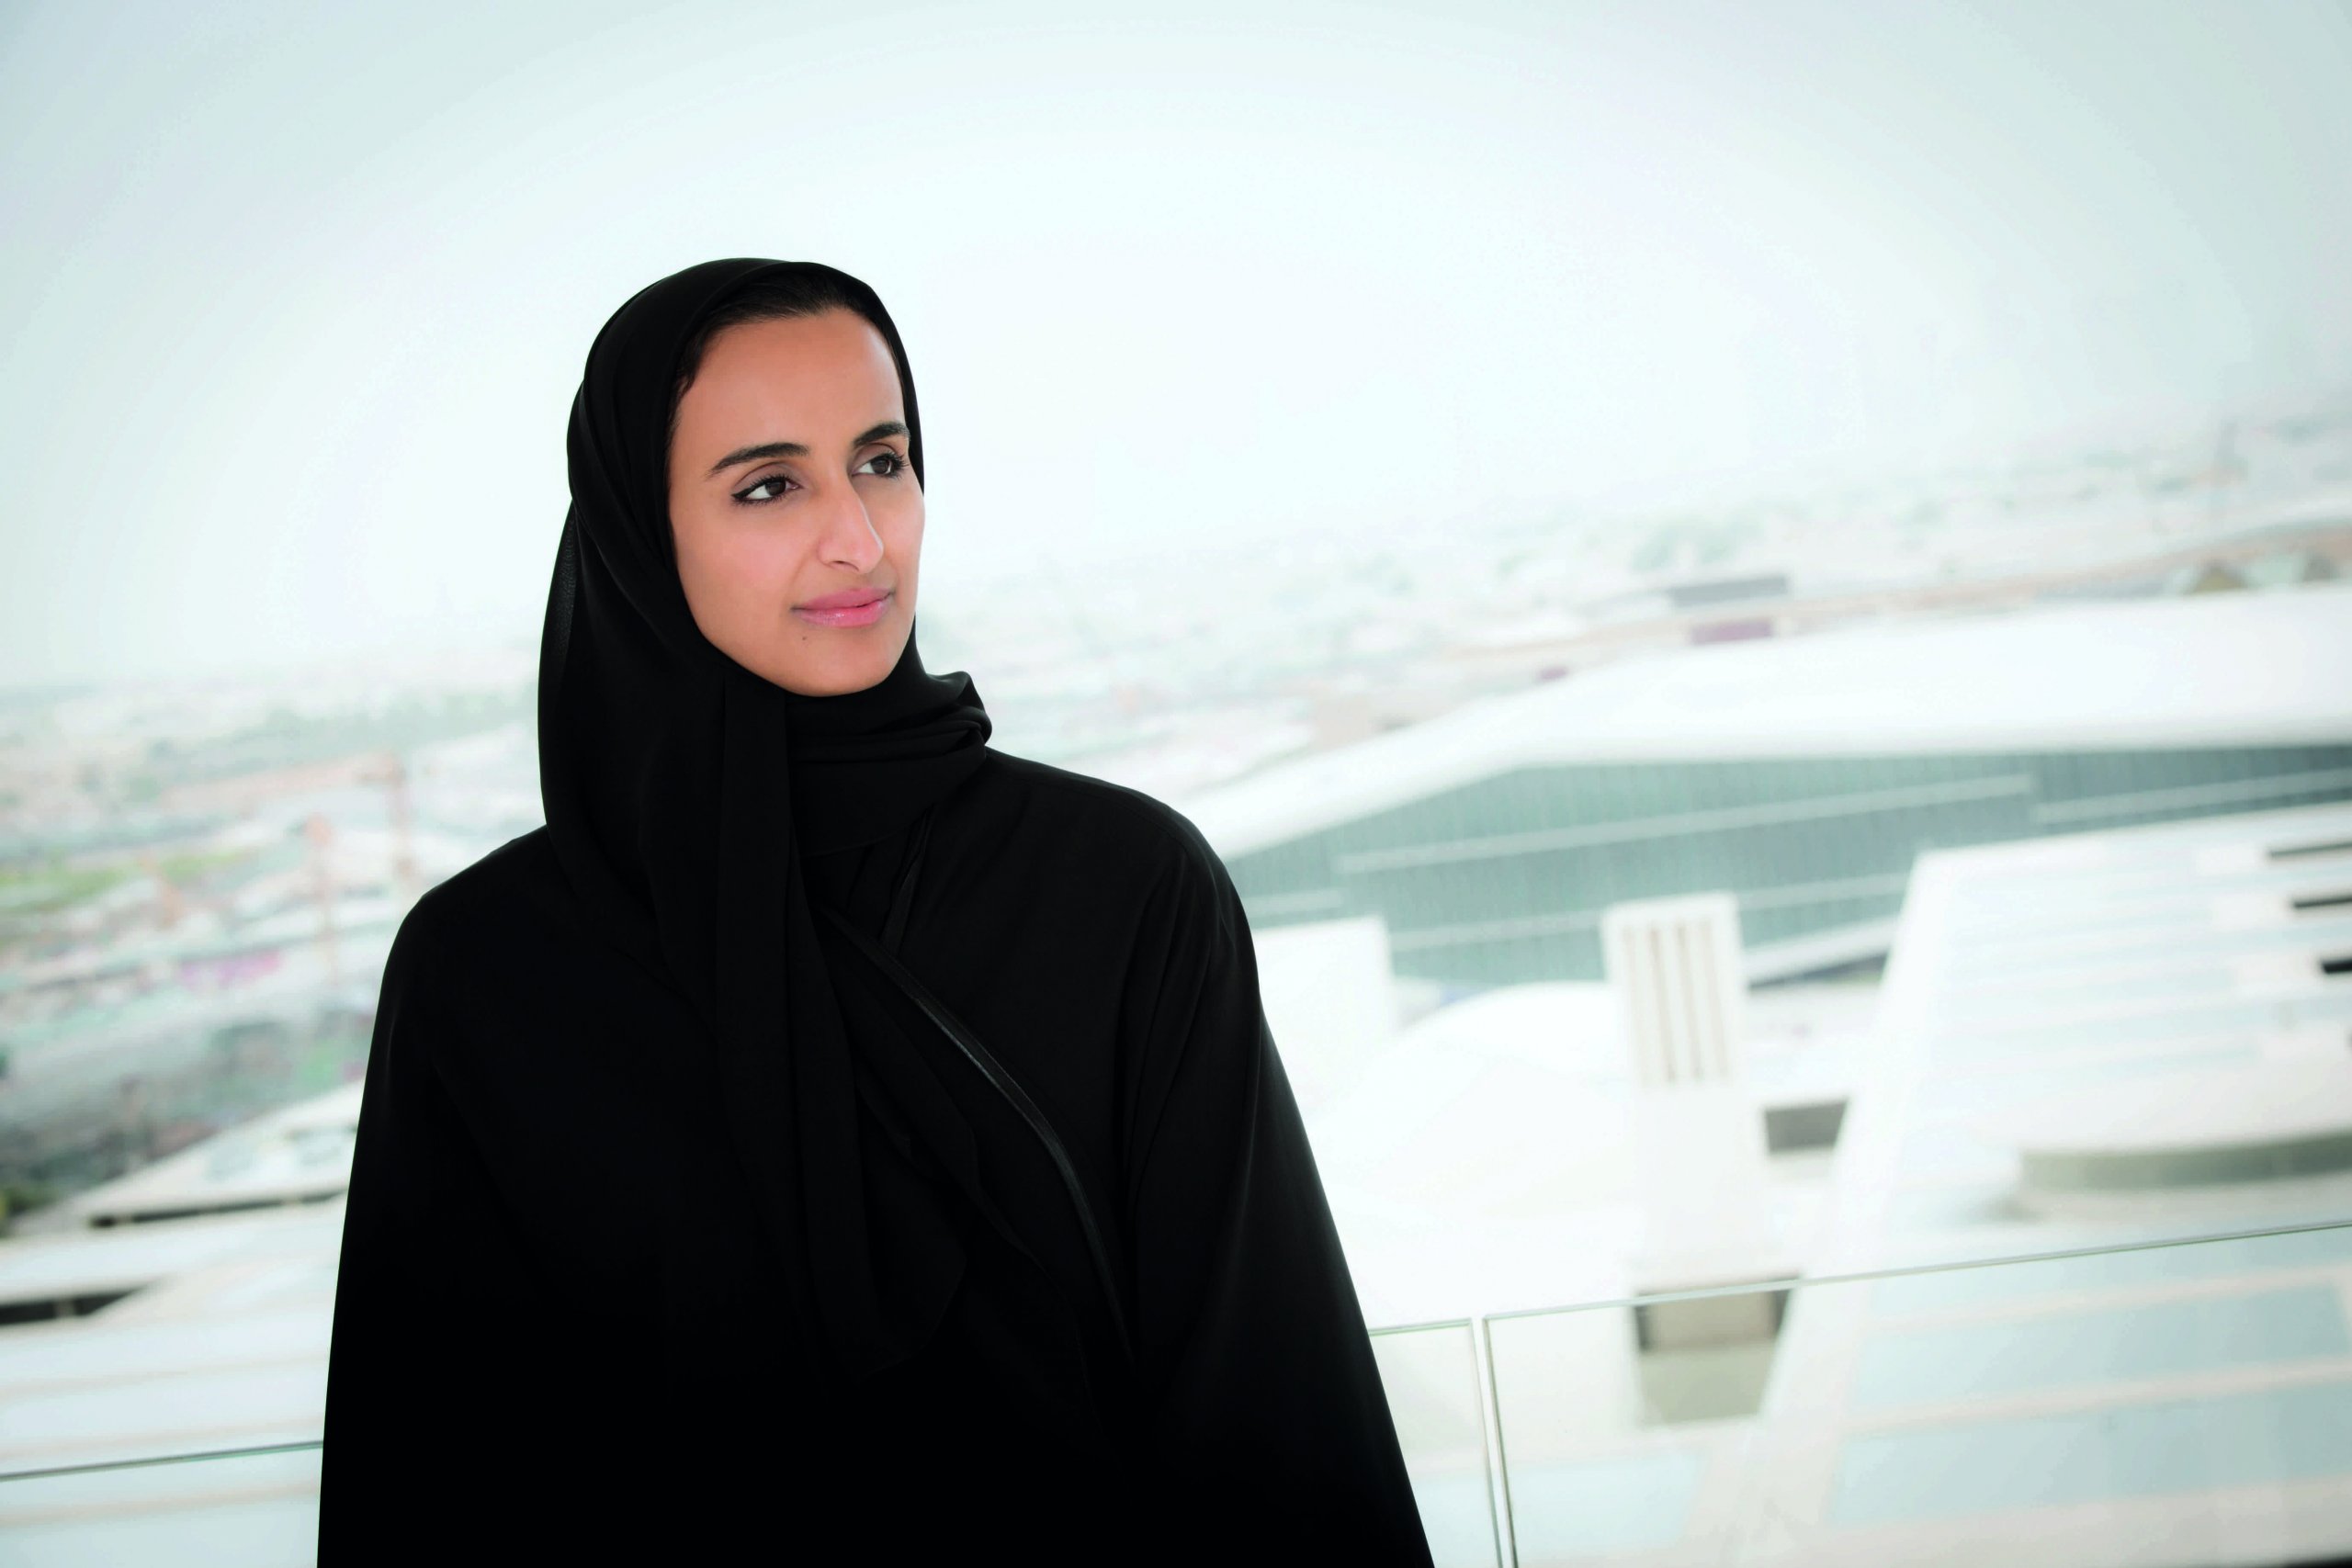 مؤسسة قطر تتعهد بتعزيز التمثيل النسائي على مستوى المتحدثين المشاركين في جميع مؤتمراتها وفعالياتها المحلية والدولية